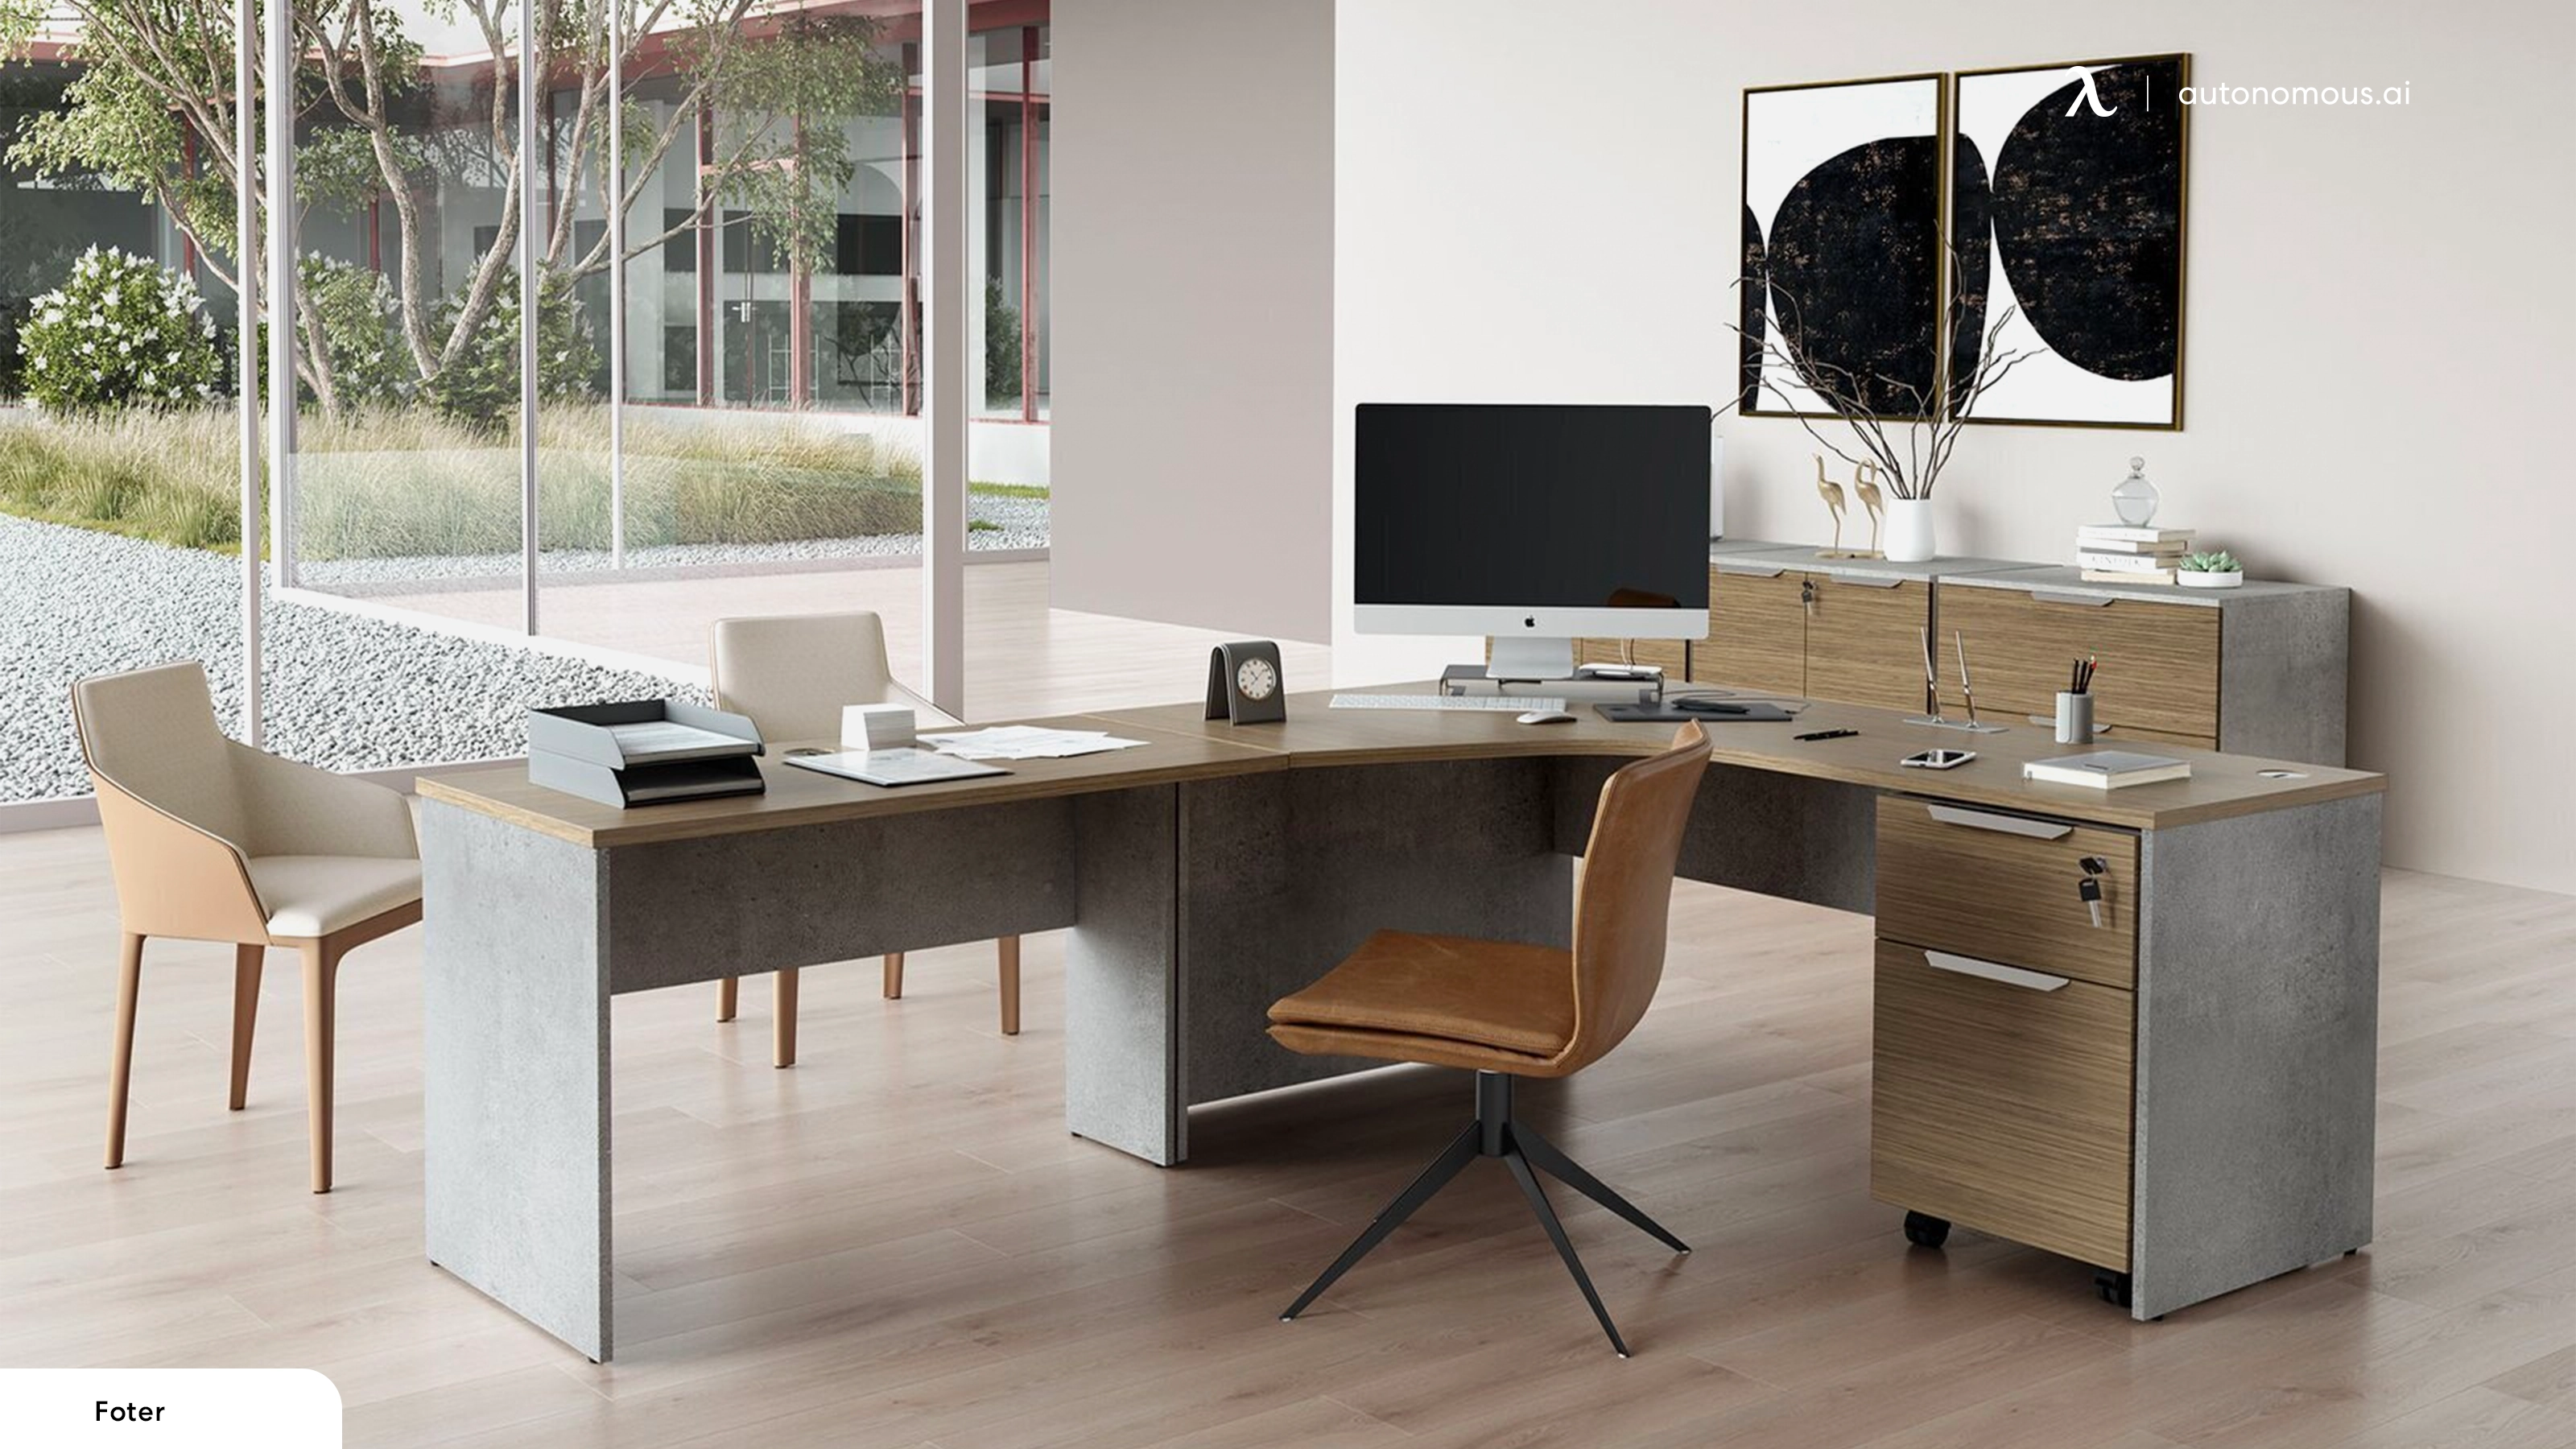 5 Popular Brands of Modern L-shaped Desks Offered at Good Prices